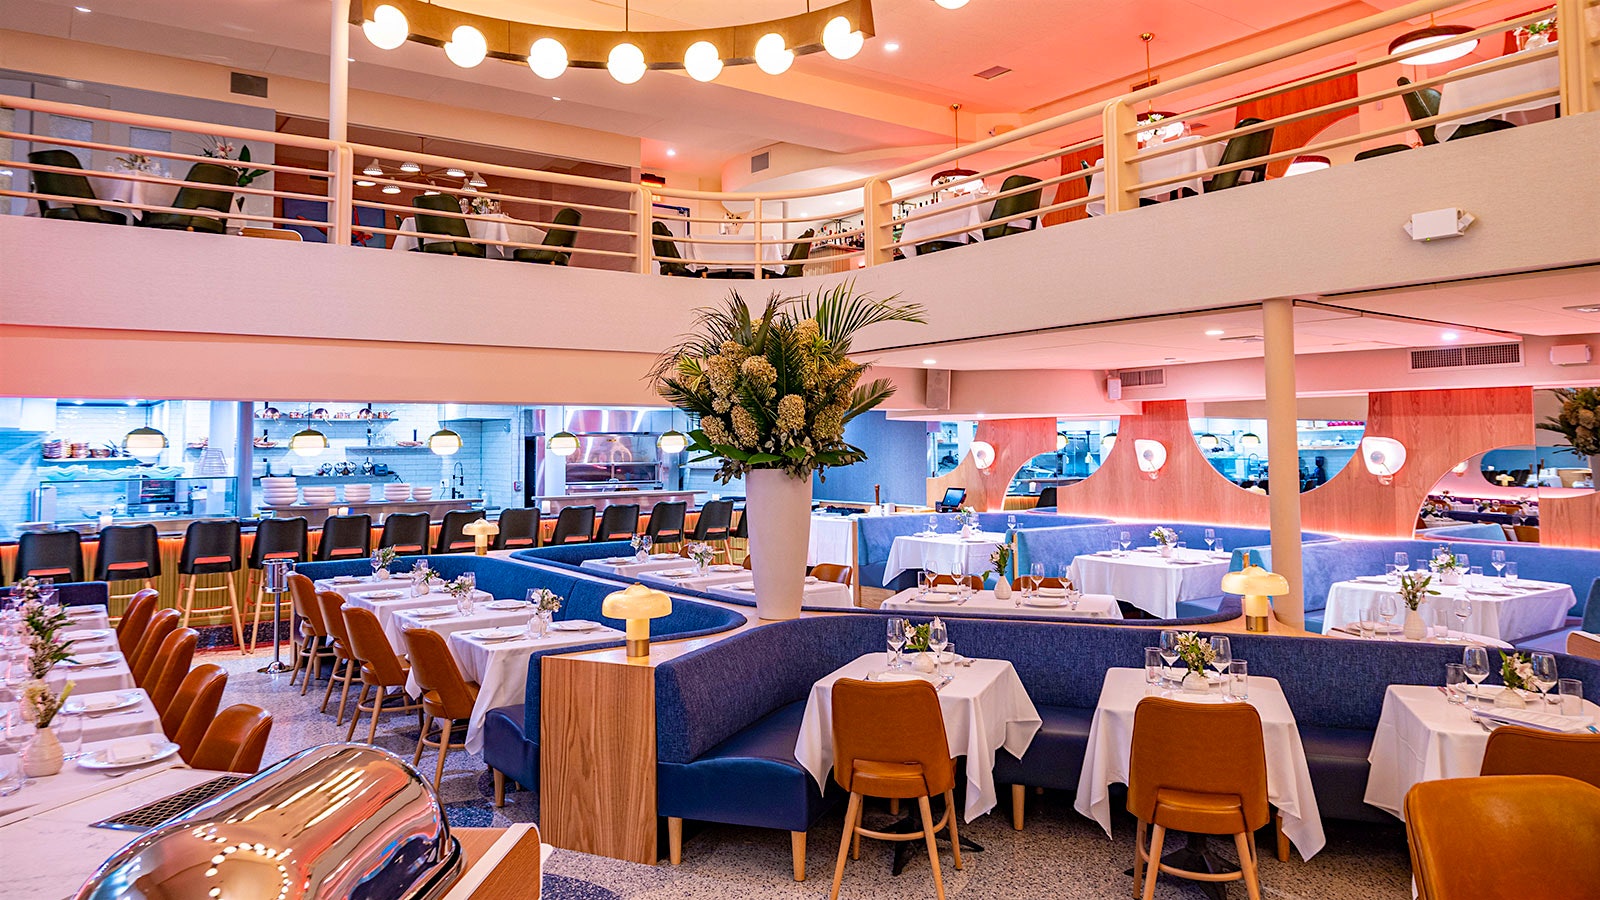  Comedor de varios niveles de Monterey con bancos de color azul claro y sillas color canela en el primer nivel y una cocina abierta a lo largo de la pared opuesta